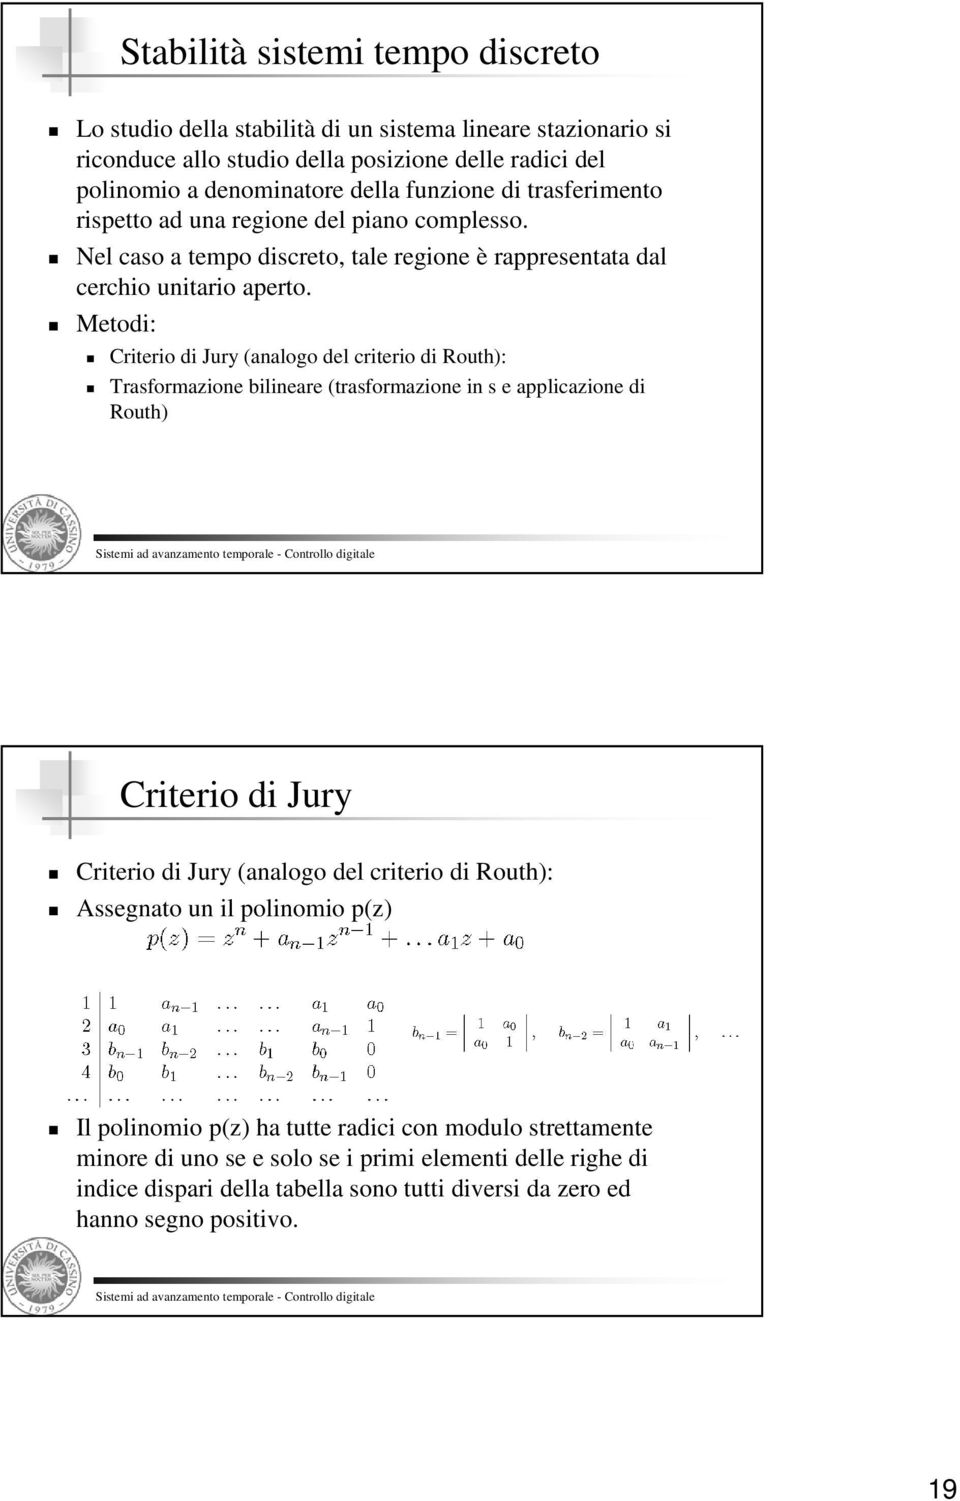 Metodi: Criterio di Jury (analogo del criterio di Routh): Trasformazione bilineare (trasformazione in s e applicazione di Routh) Criterio di Jury Criterio di Jury (analogo del criterio di